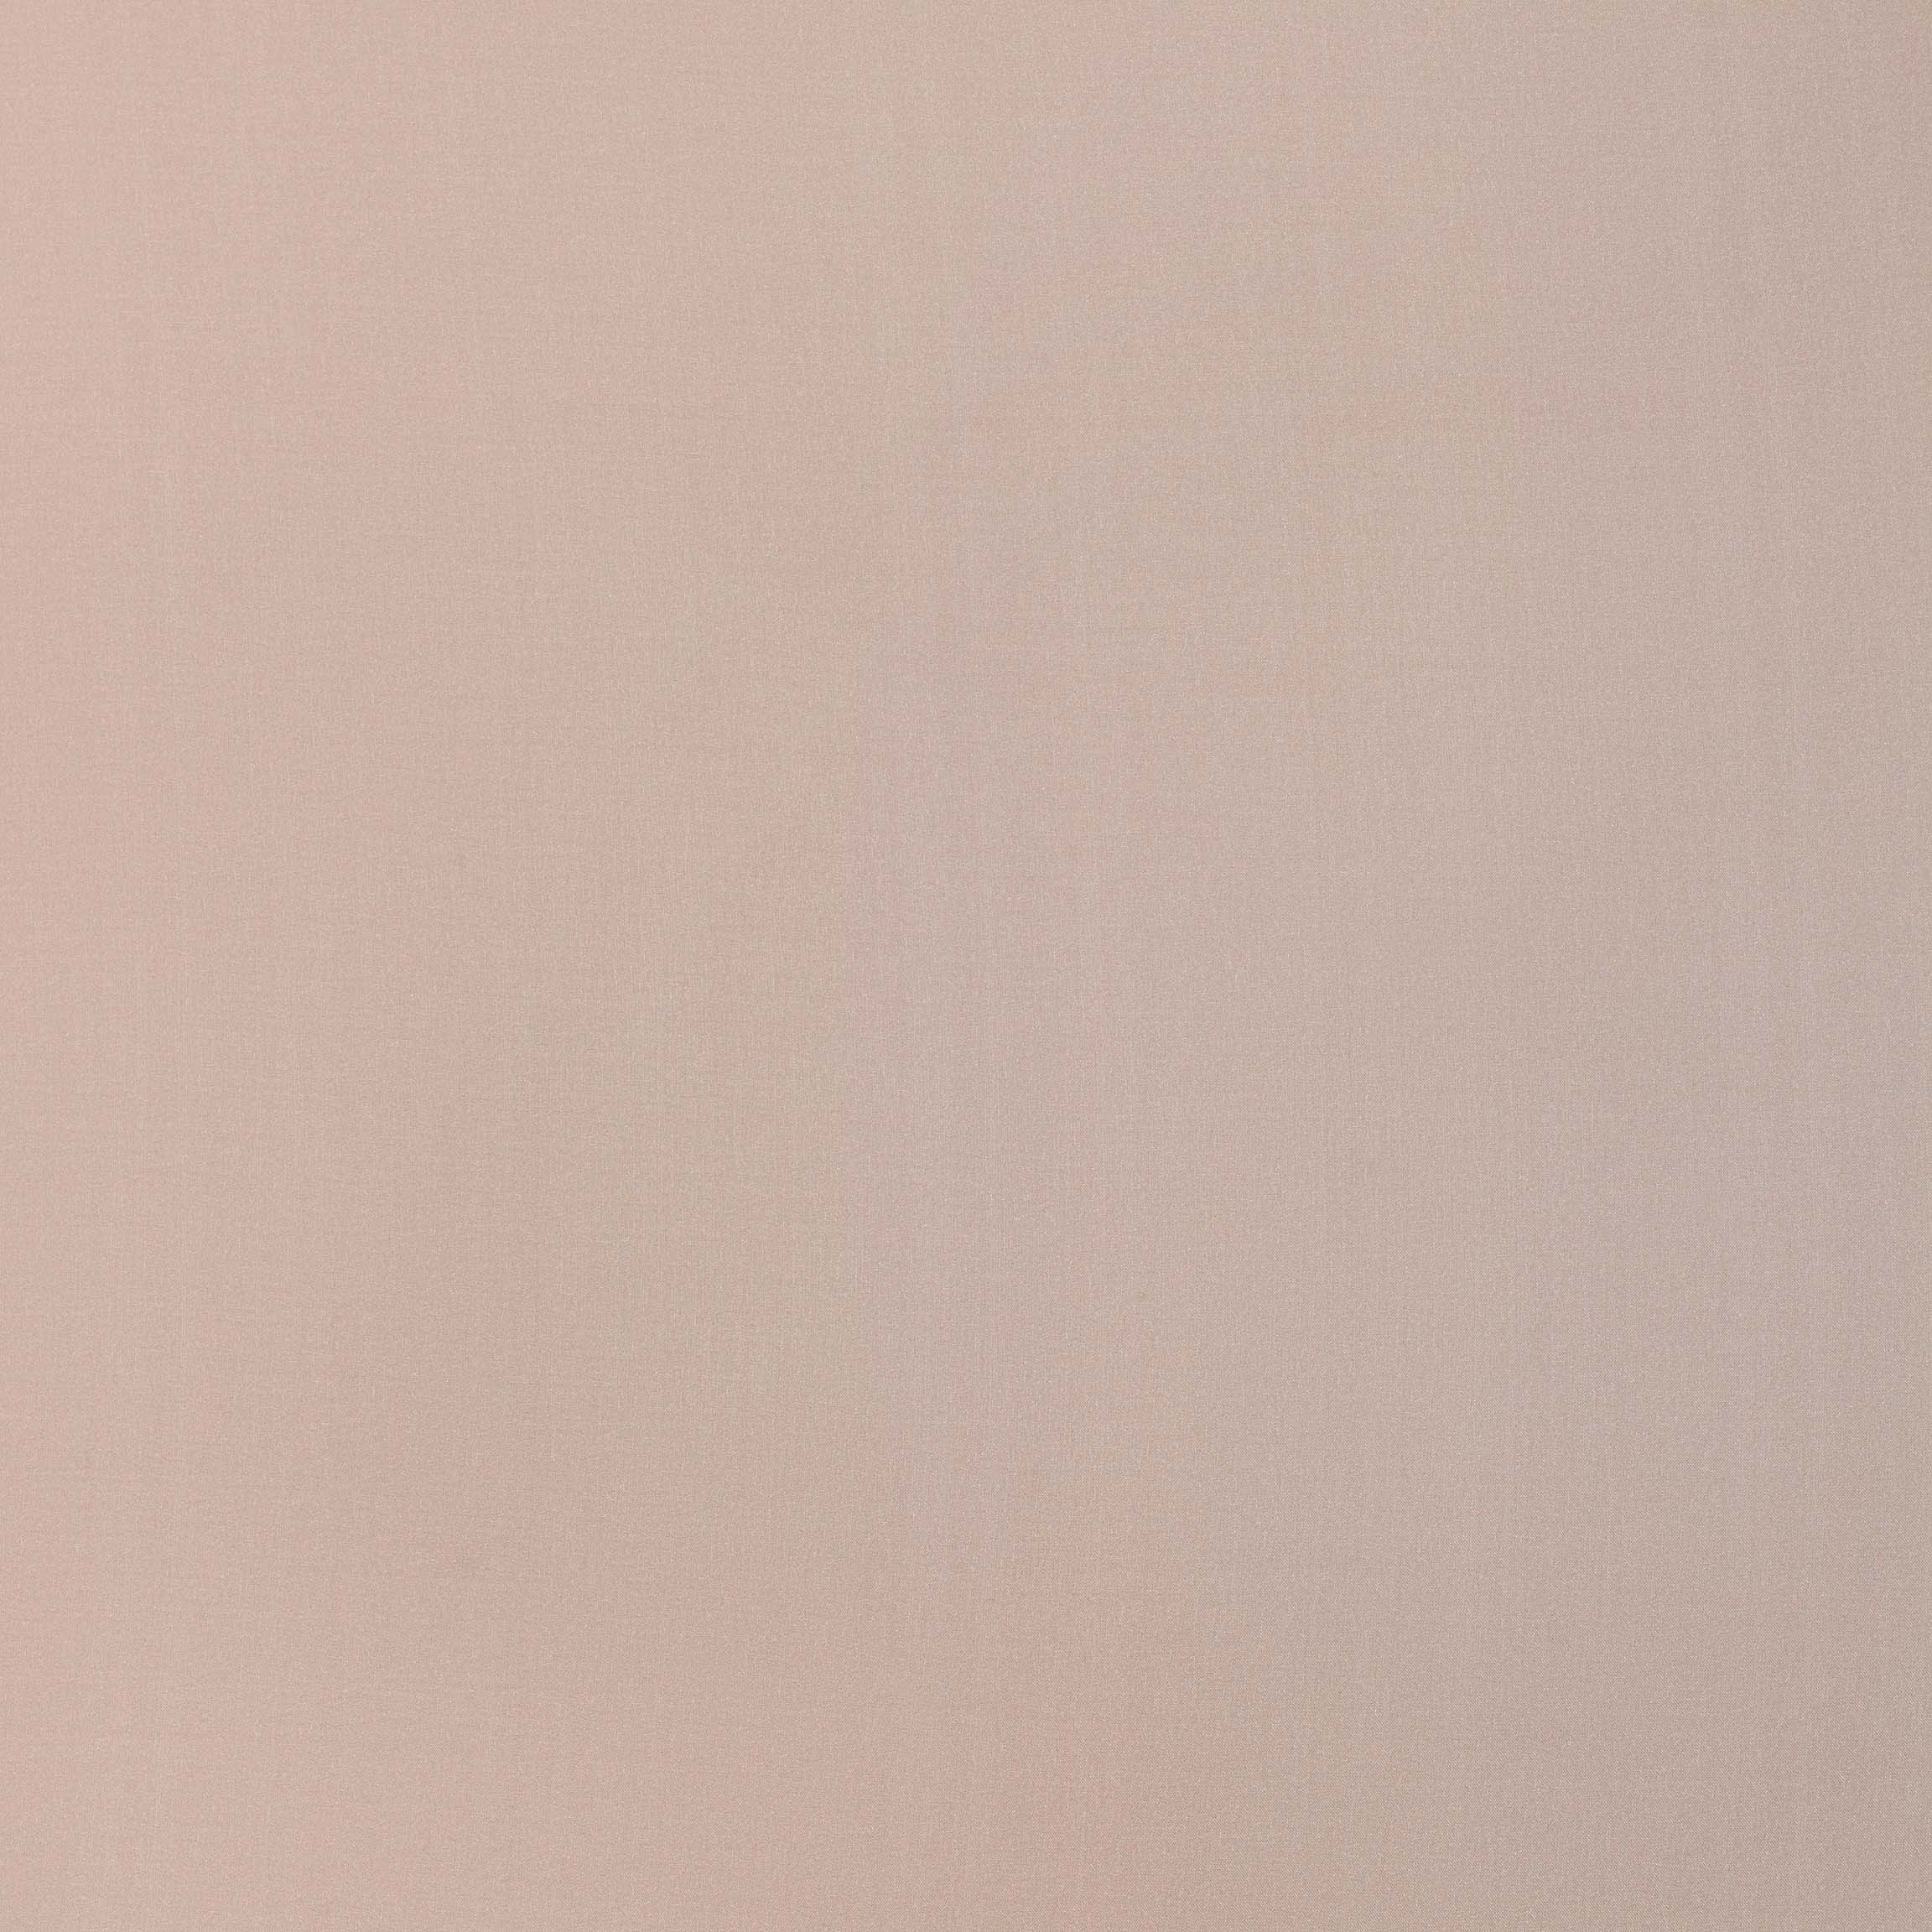  Тюль NOEL CAPPUCCINO, ширина 300 см  - Фото